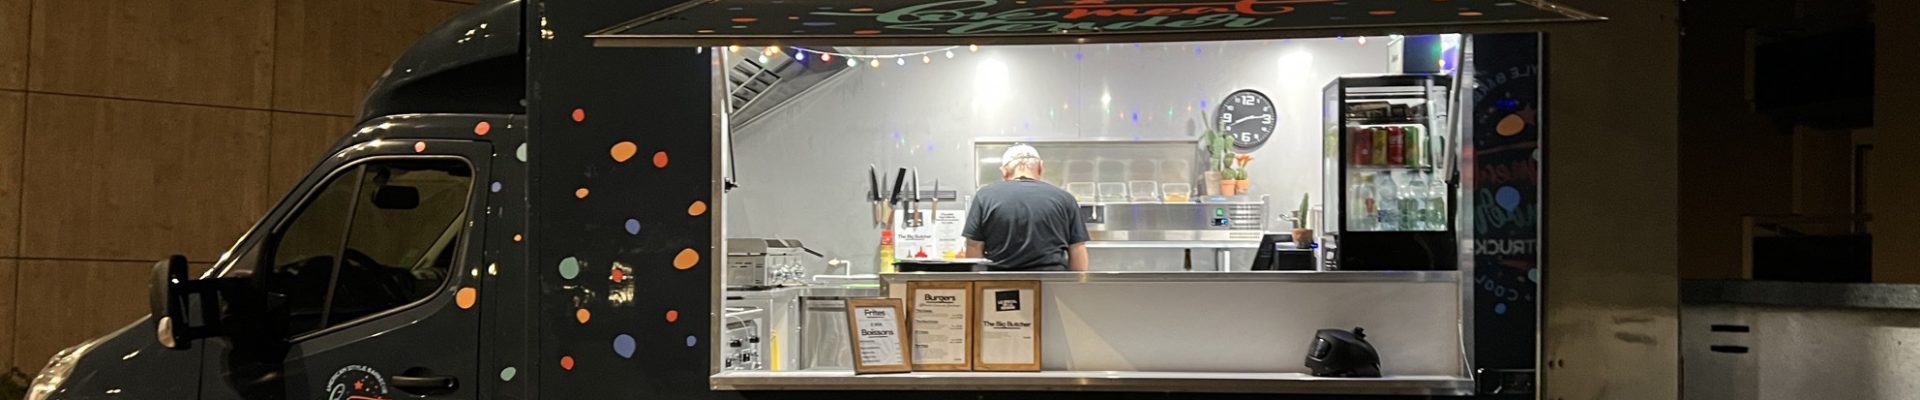 [On a testé] Love Meat Tender, le food truck qui sublime les burgers